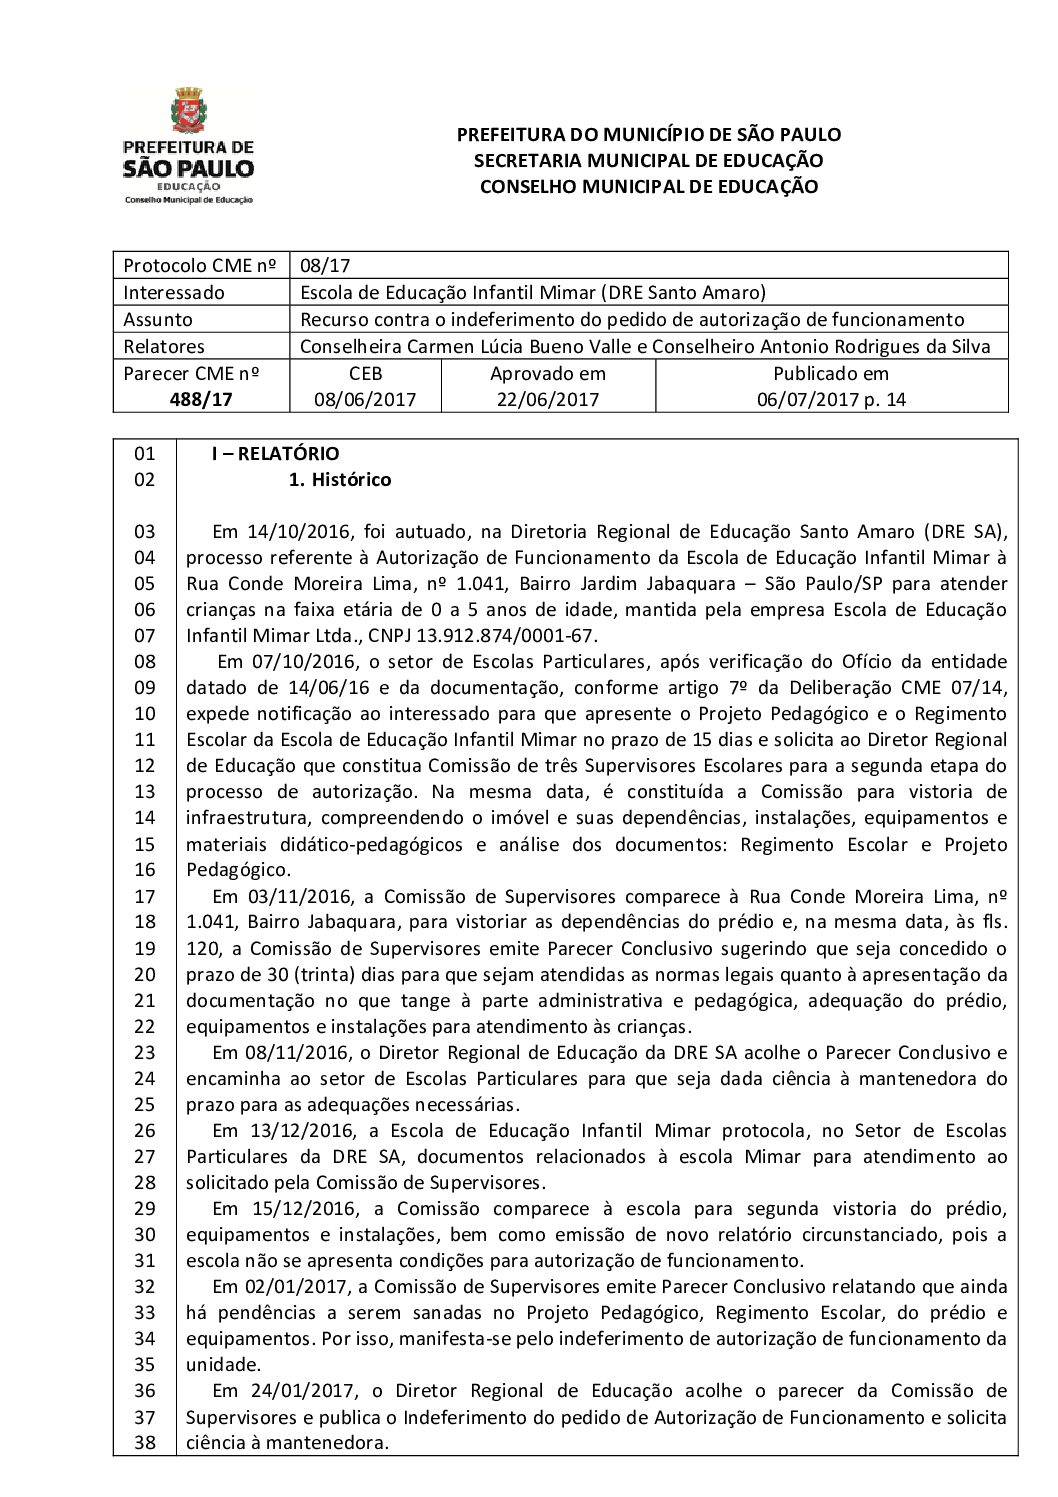 Parecer CME nº 488/2017 - Escola de Educação Infantil Mimar (DRE Santo Amaro) - Recurso contra o indeferimento do pedido de autorização de funcionamento 